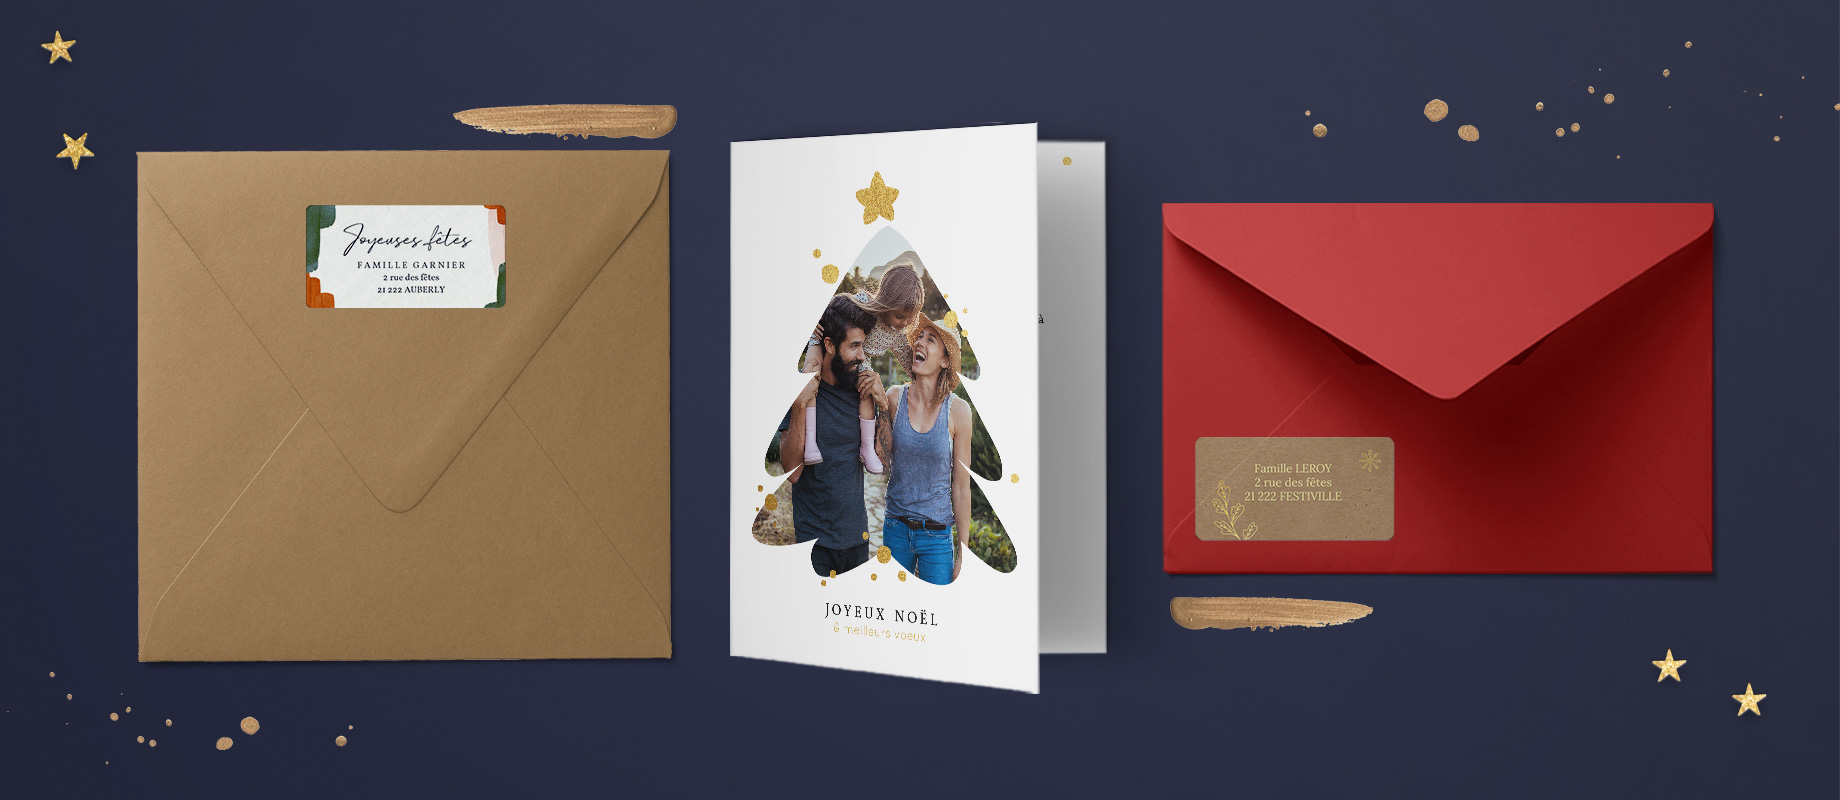 Deux enveloppes kraft et rouge avec leur étiquette d'adresse de Noël personnalisée, accompagnées d'une carte de Noël au design sapin.